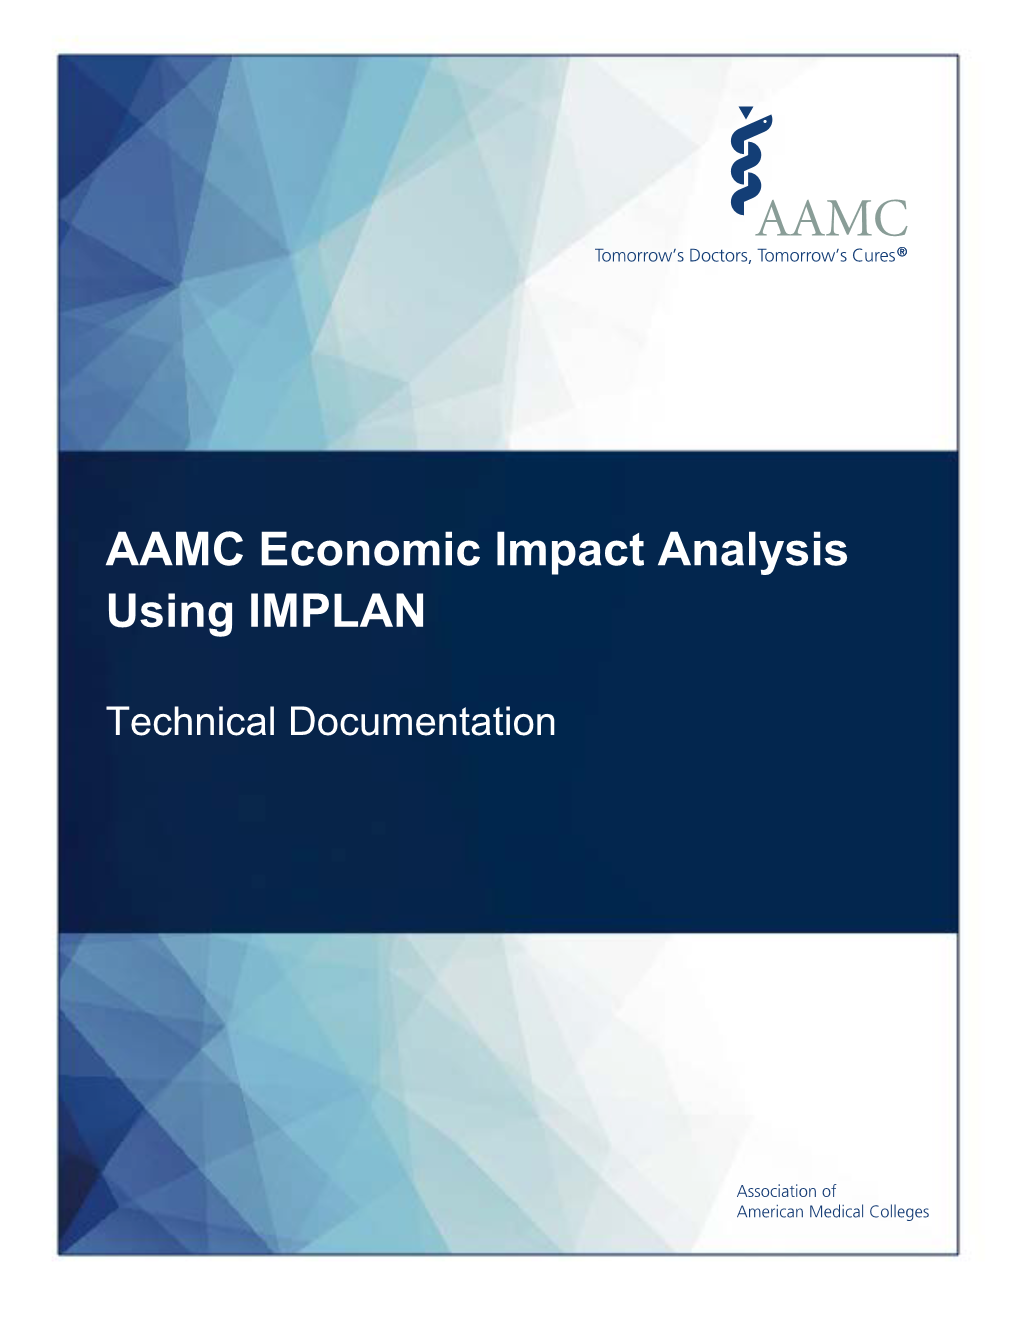 AAMC Economic Impact Analysis Using IMPLAN